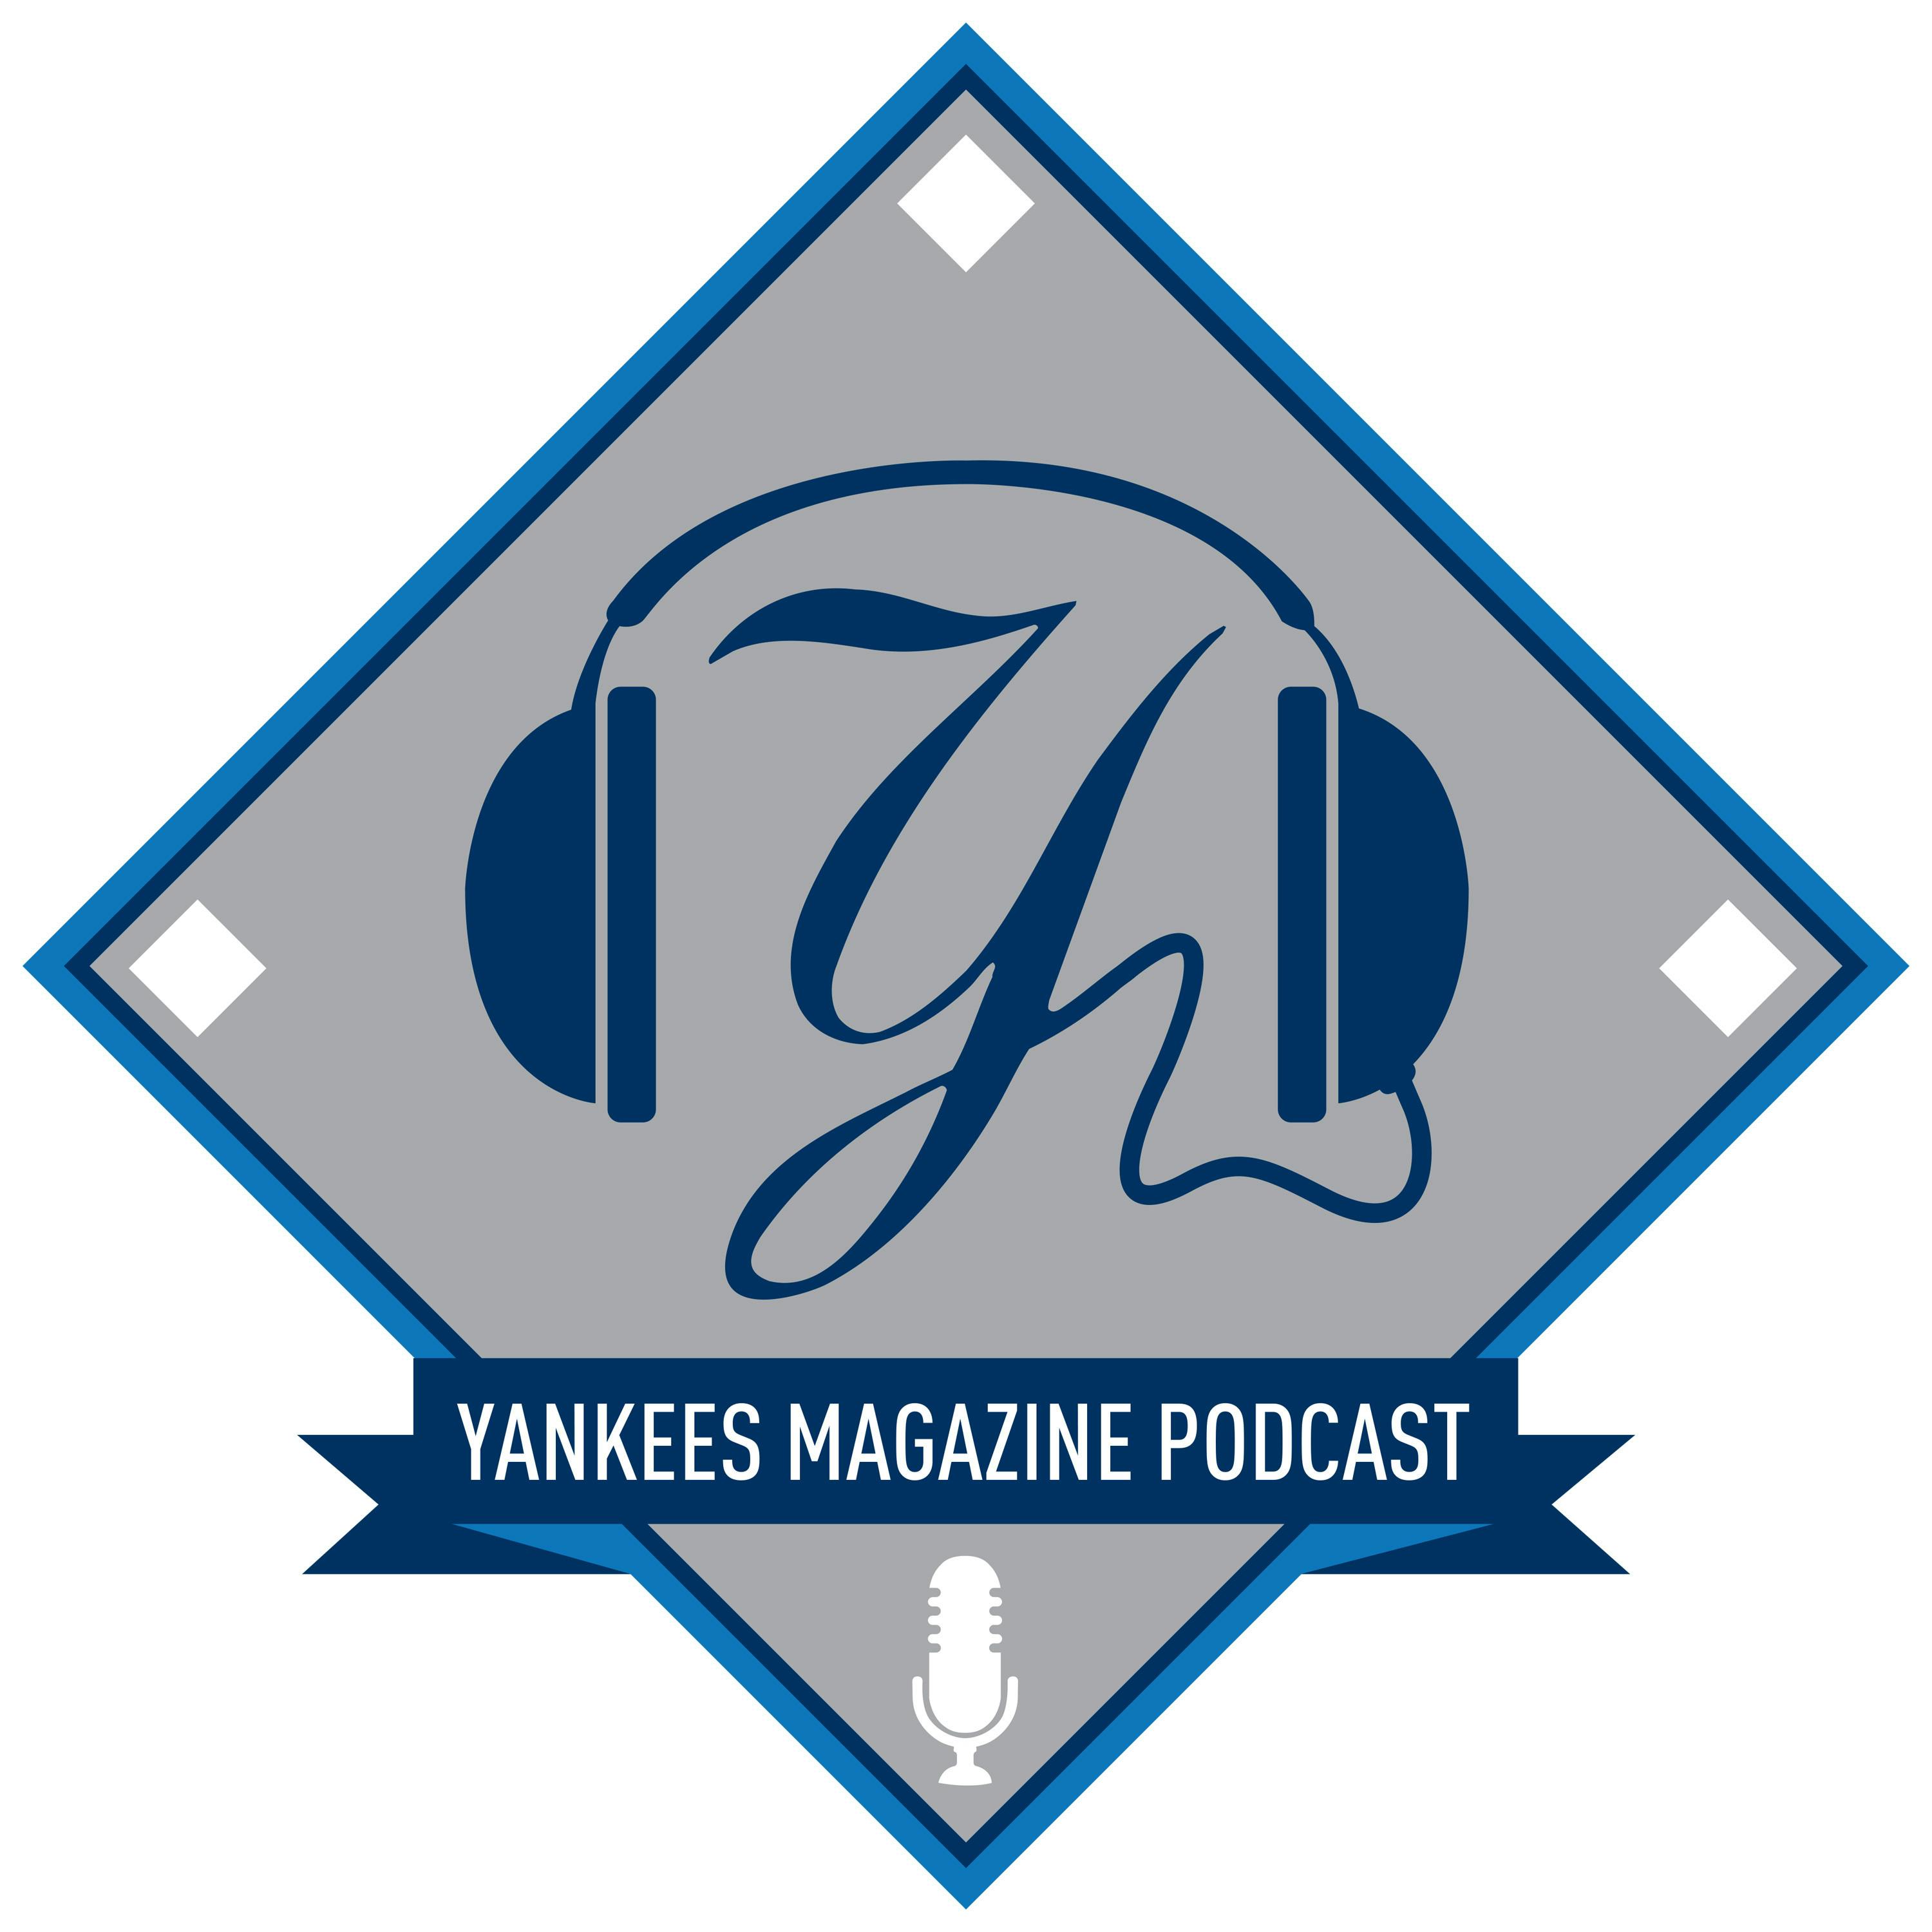 Yankees Magazine Podcast: Episode 31